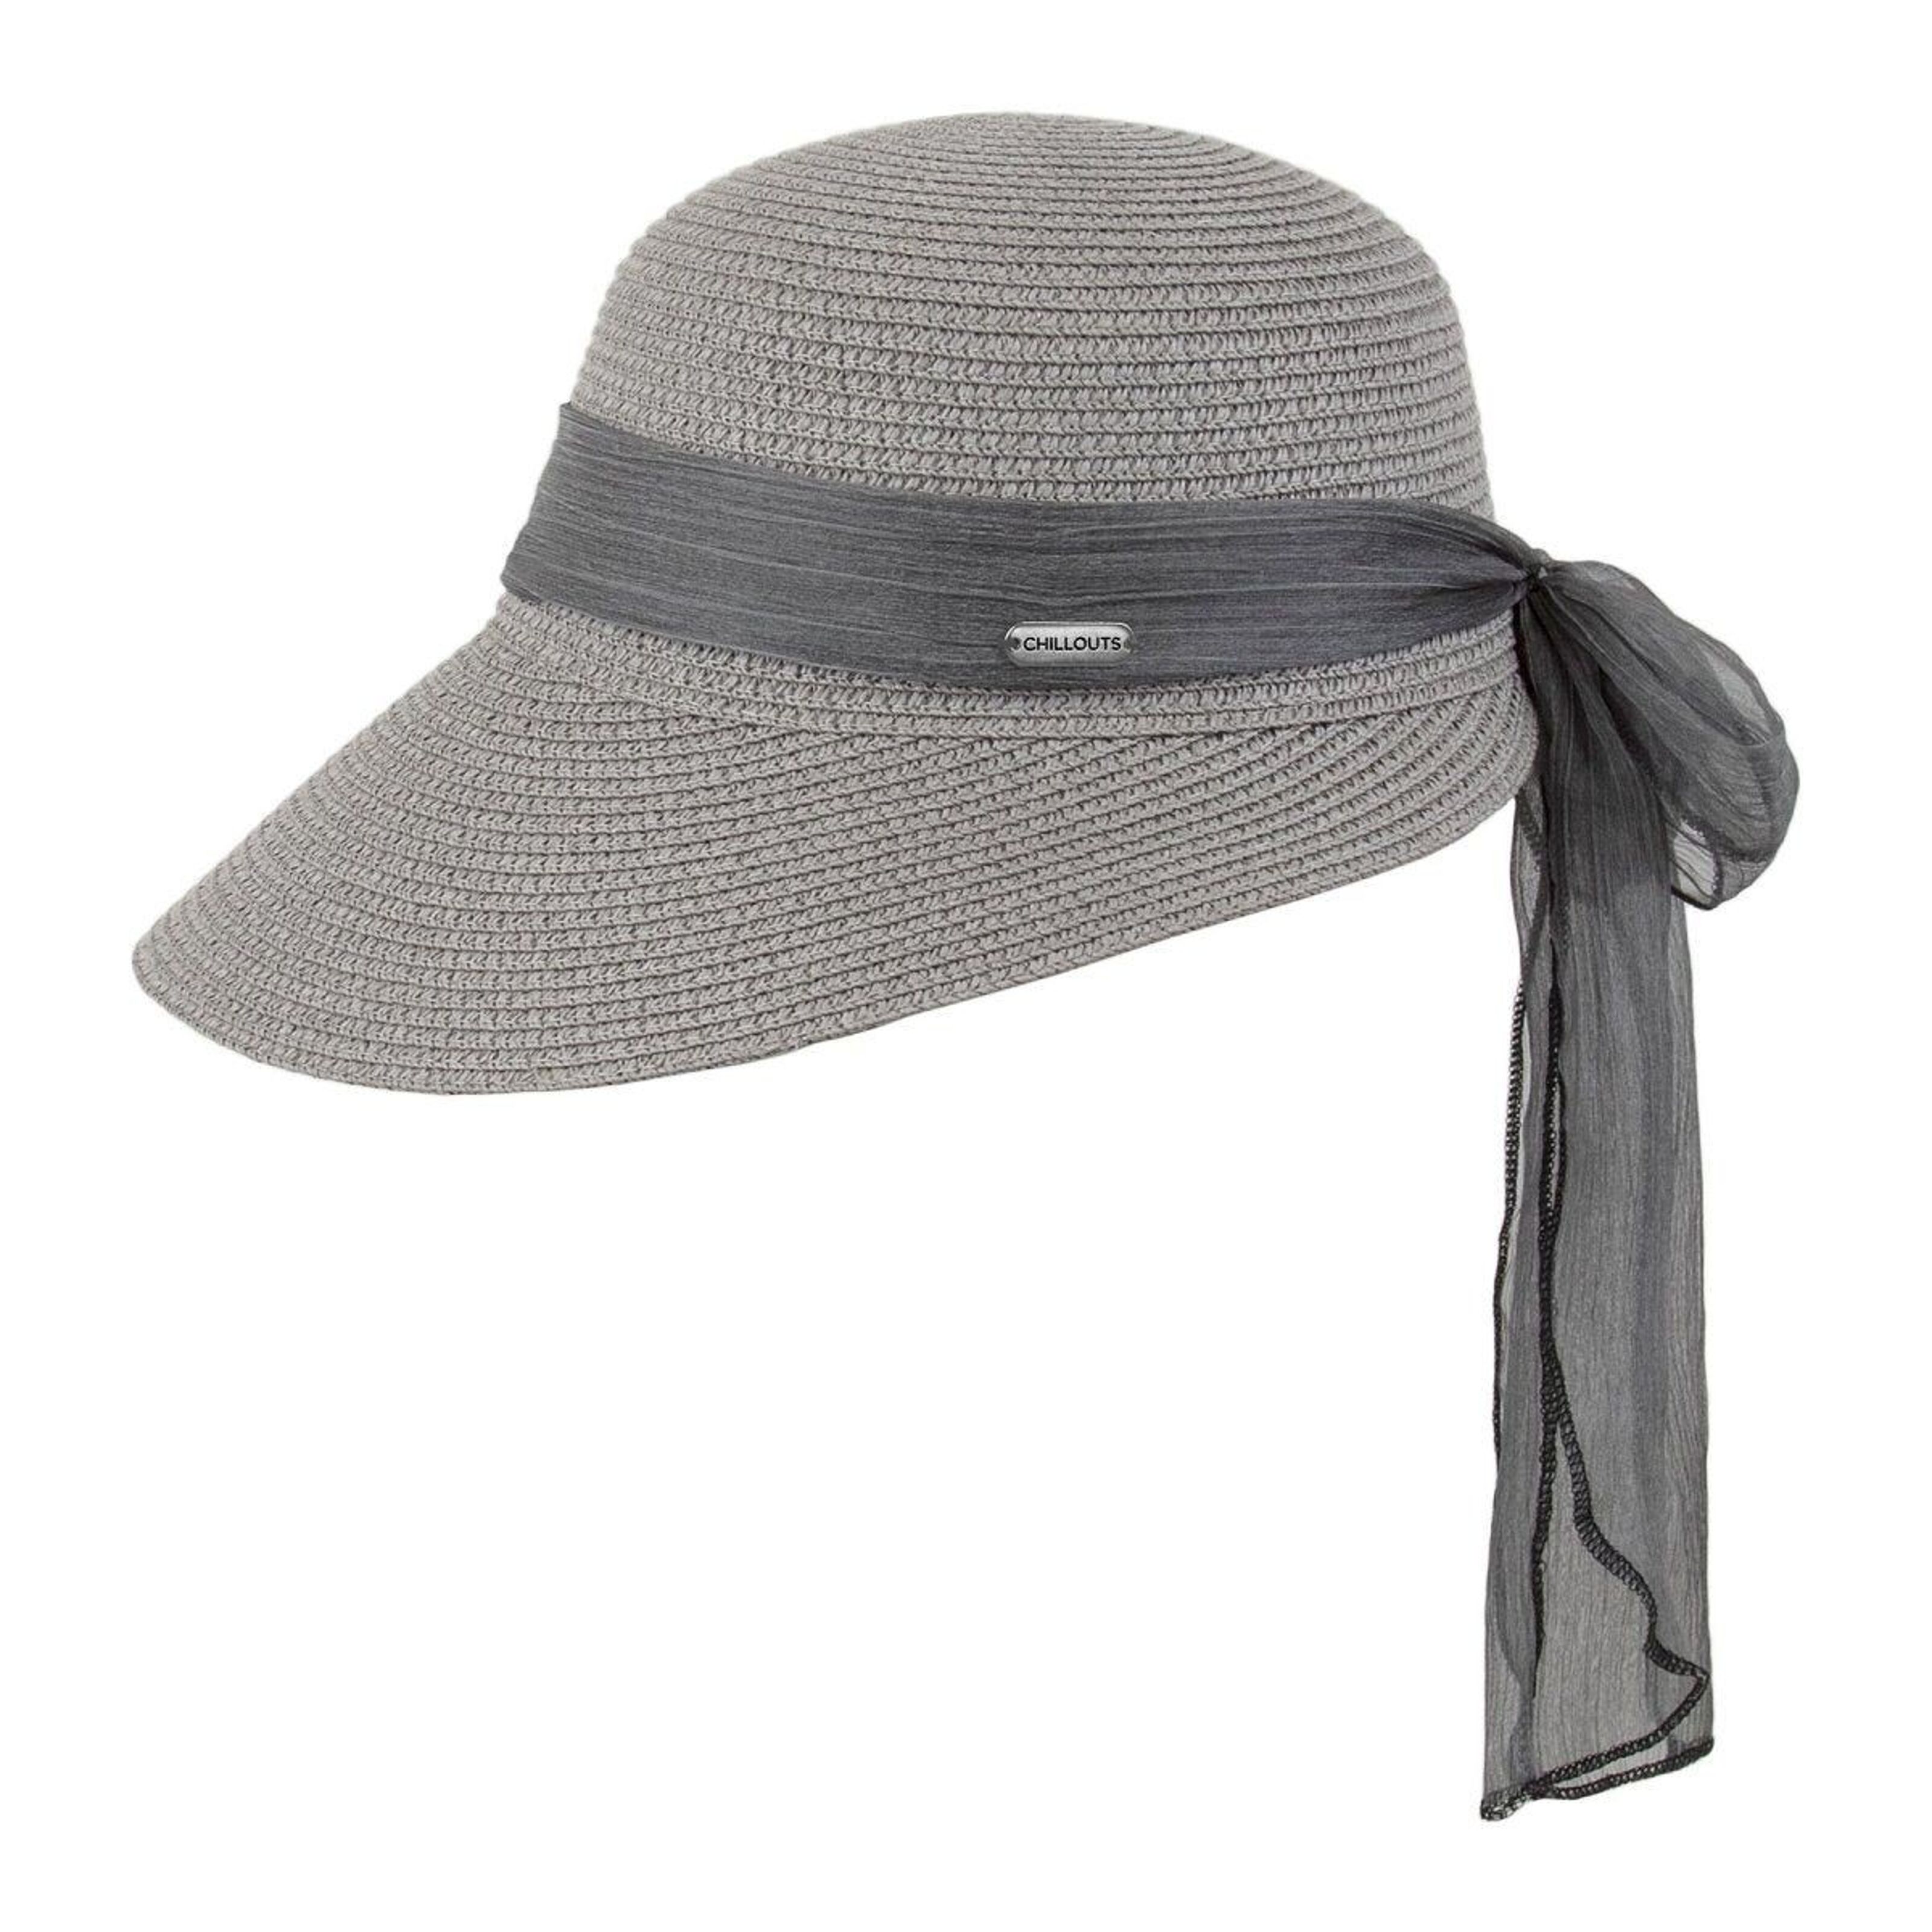 Buy wholesale Summer Lafayette Hat hat) hat (sun